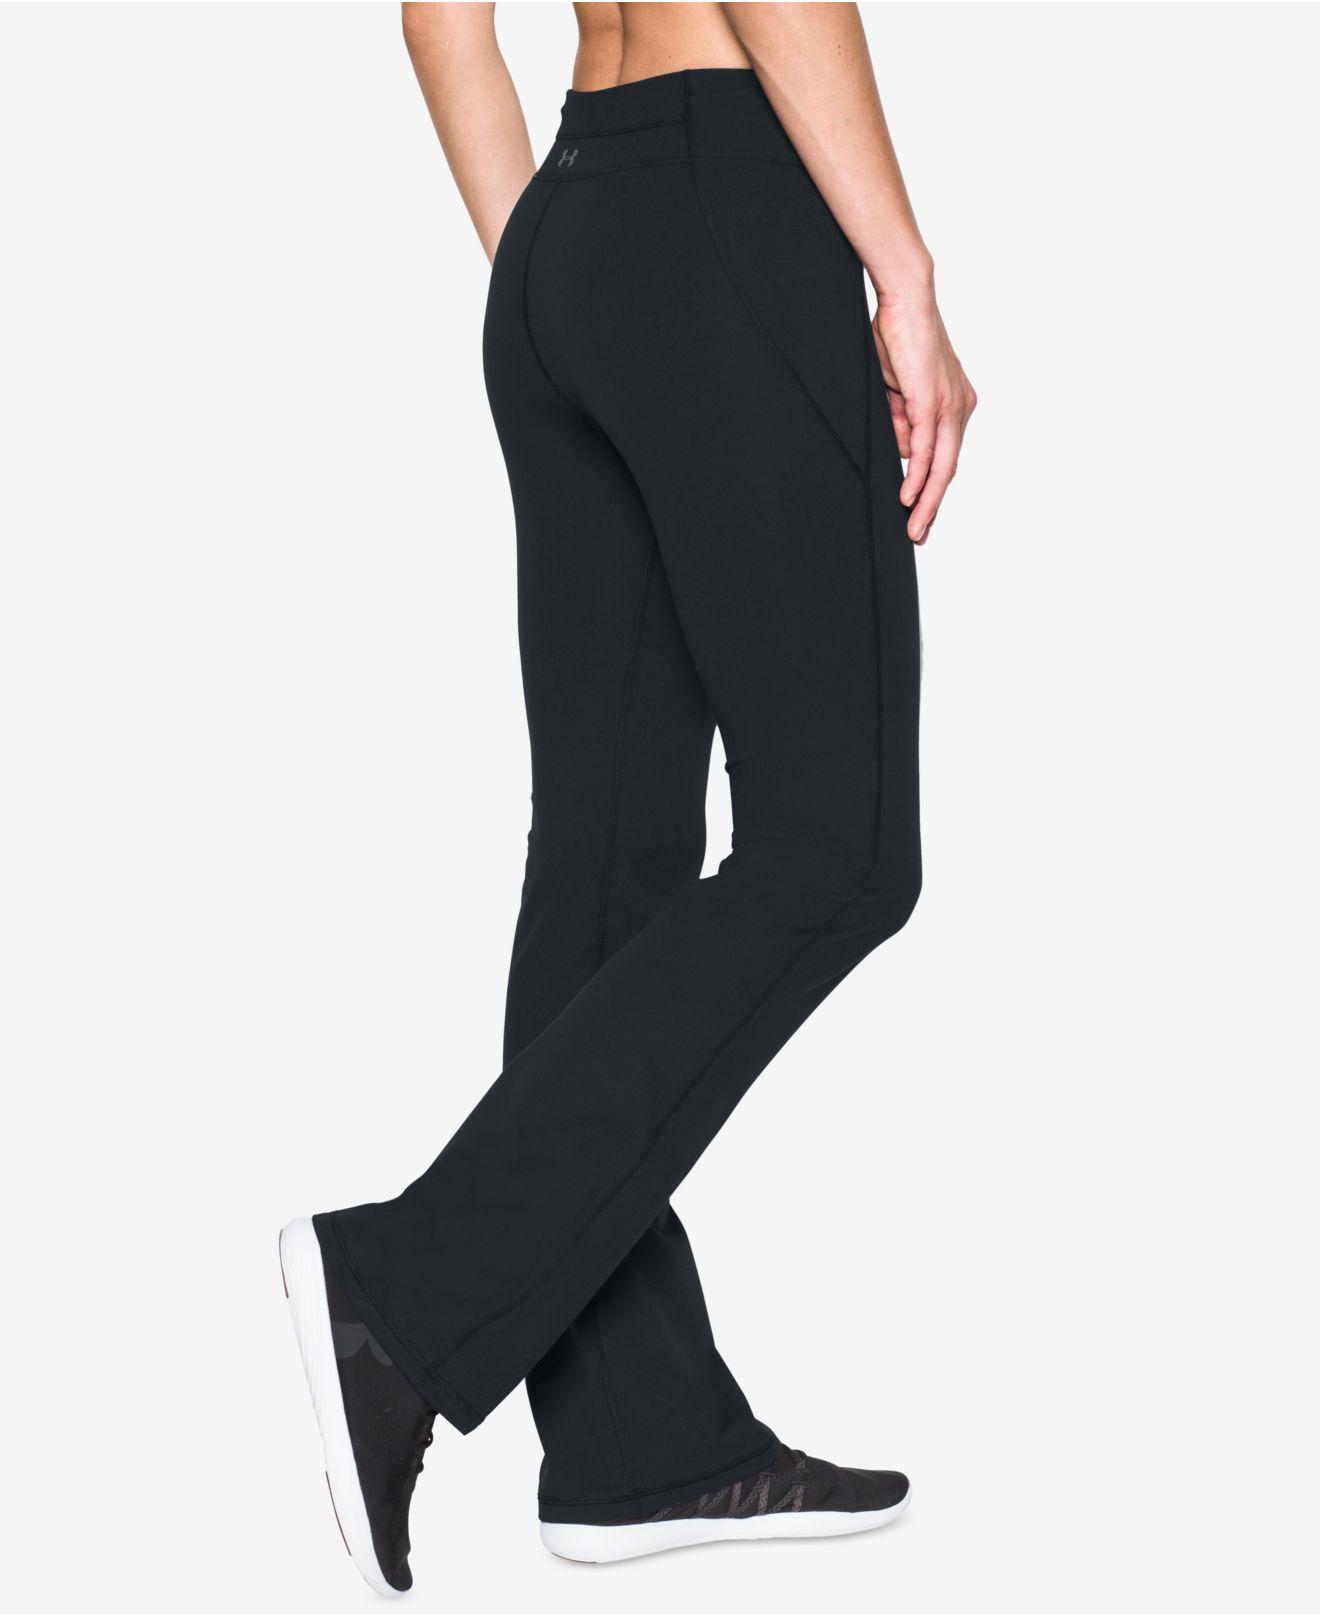 Buy > boot cut yoga pants > in stock